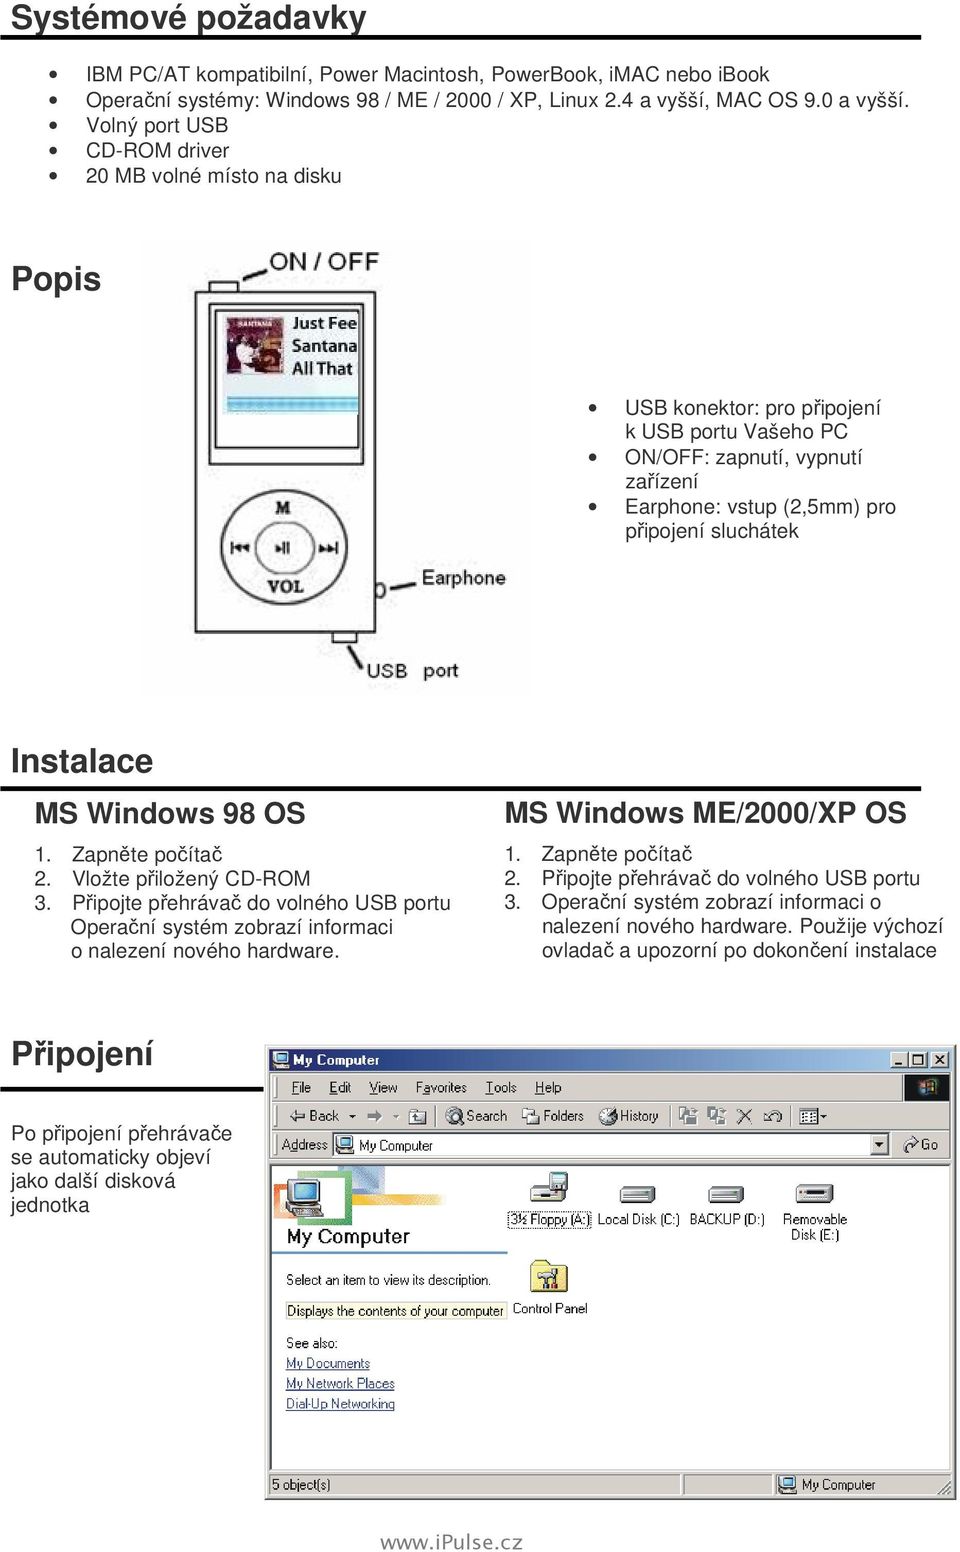 Instalace MS Windows 98 OS 1. Zapněte počítač 2. Vložte přiložený CD-ROM 3. Připojte přehrávač do volného USB portu Operační systém zobrazí informaci o nalezení nového hardware.